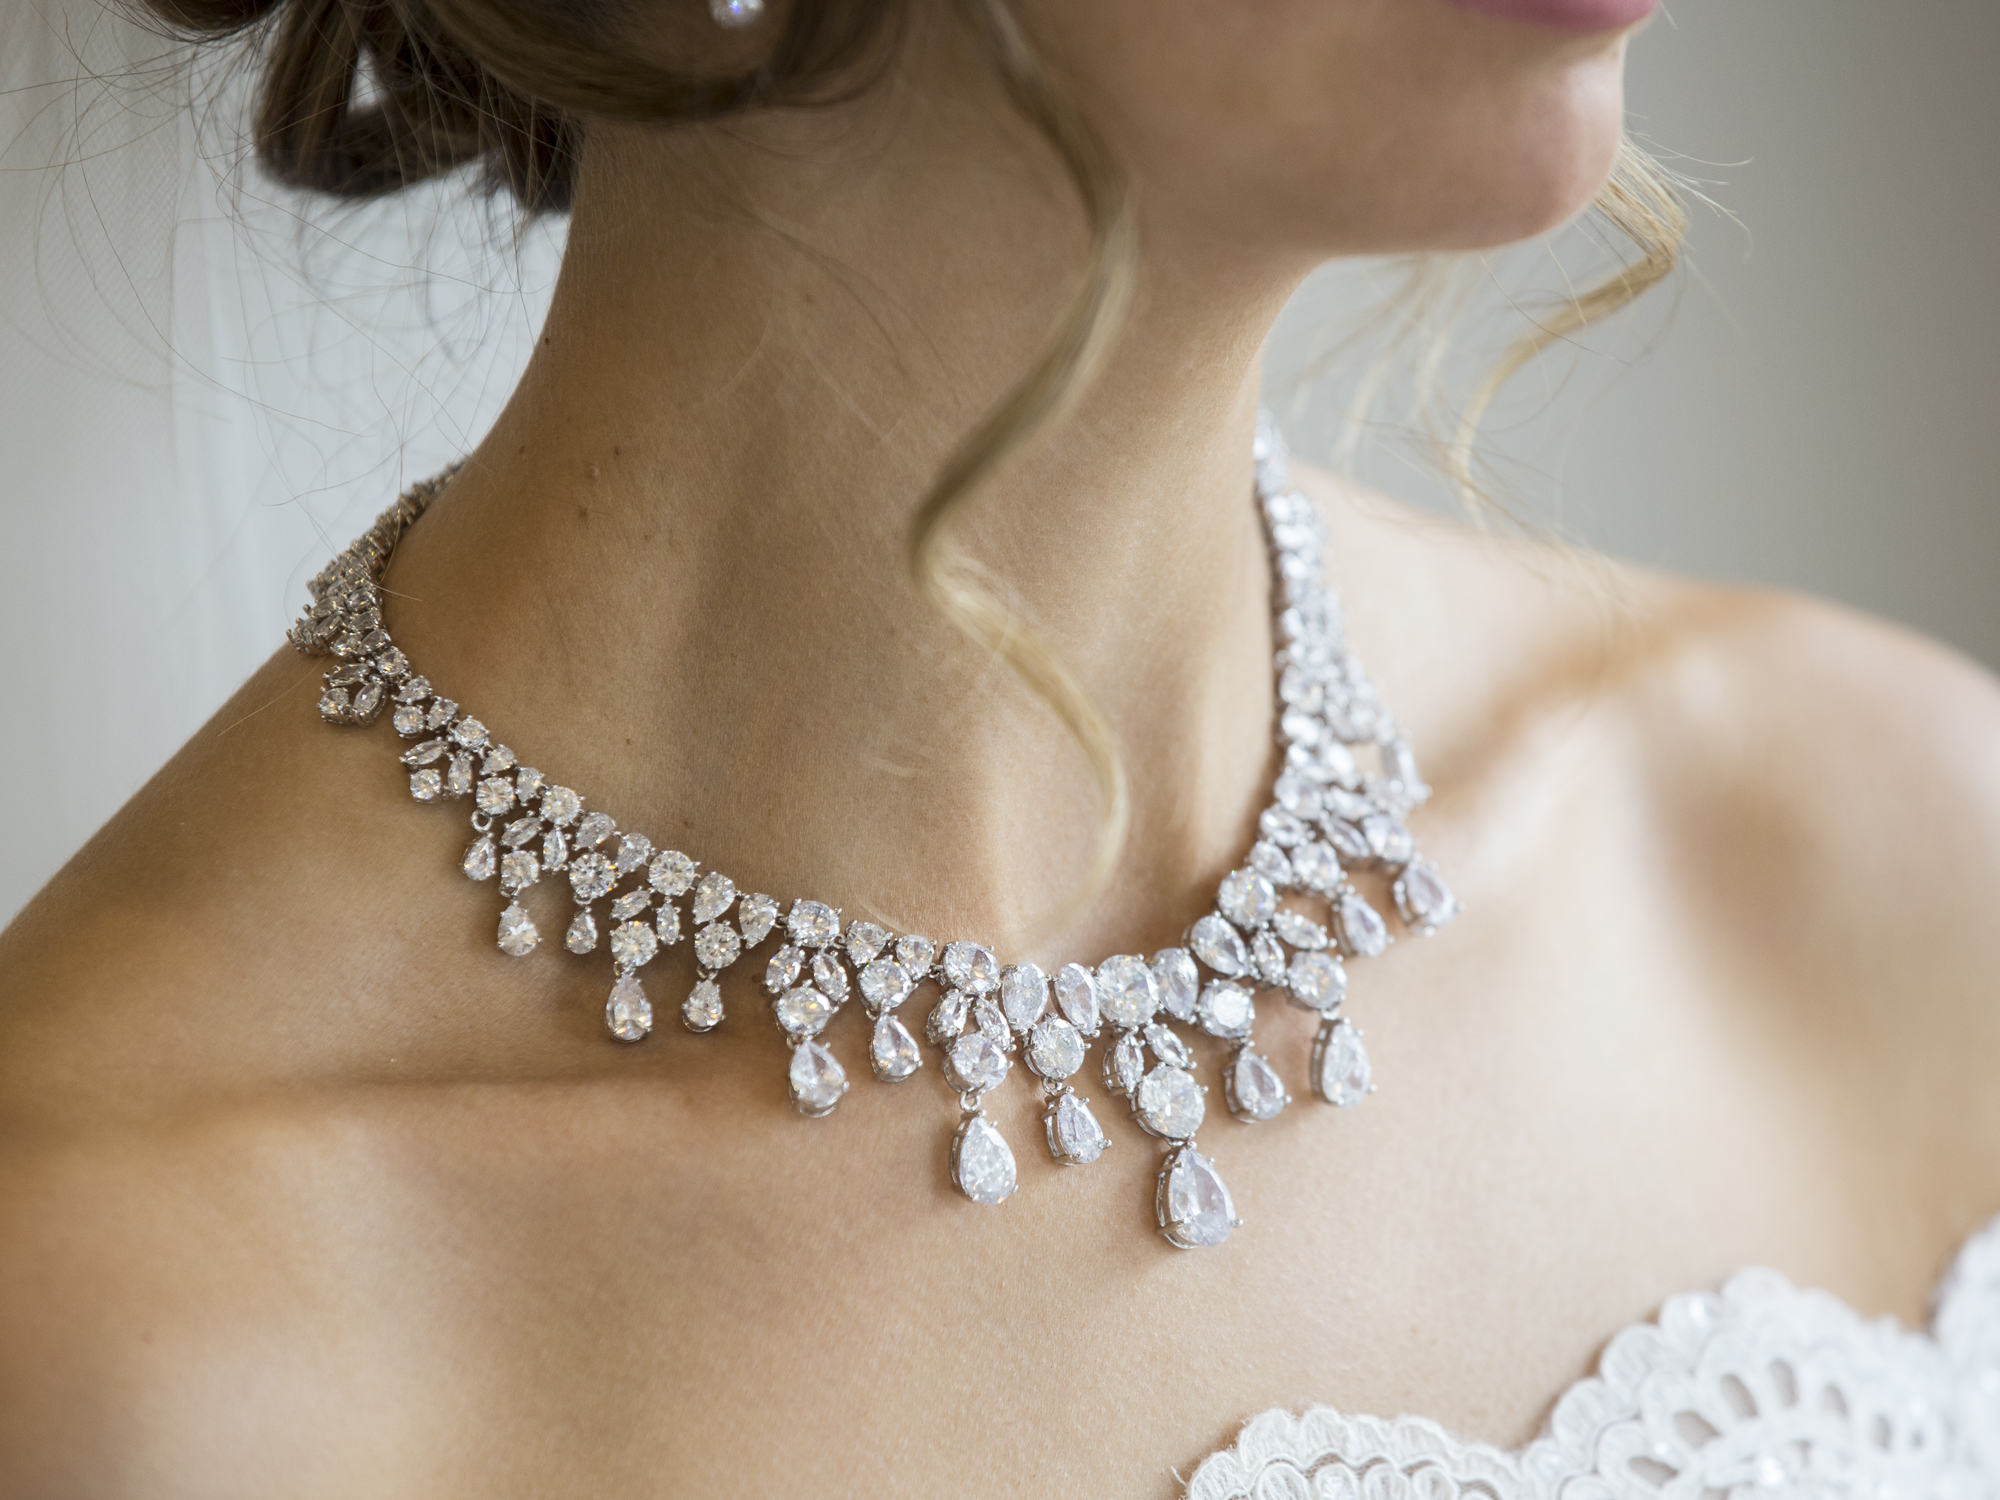 crystal necklace| Daney I Jeanette Maree|Shop online now